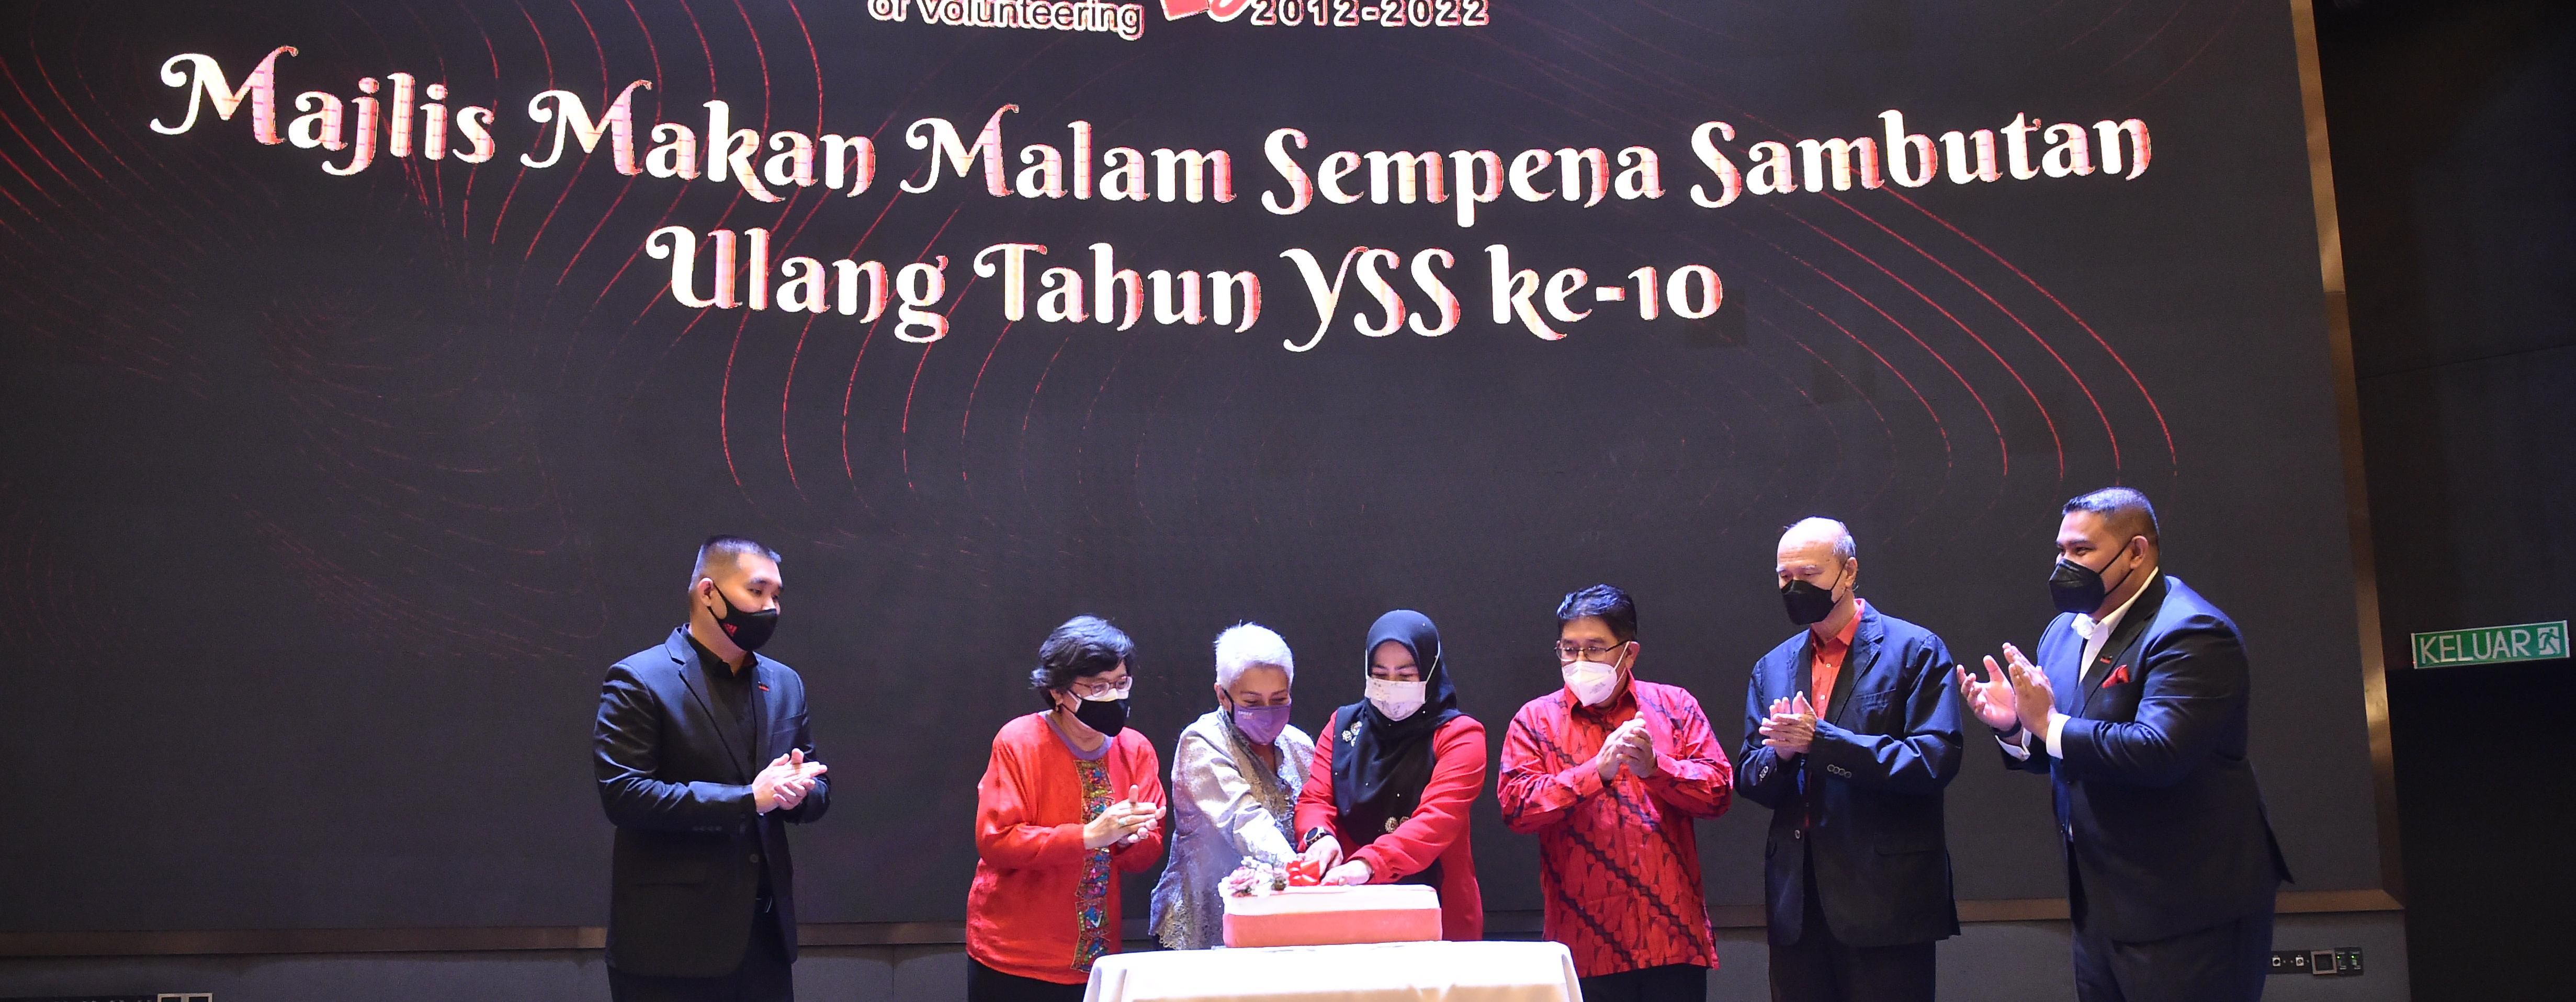 YBM Menyempurnakan Majlis Ulang Tahun YSS ke-10